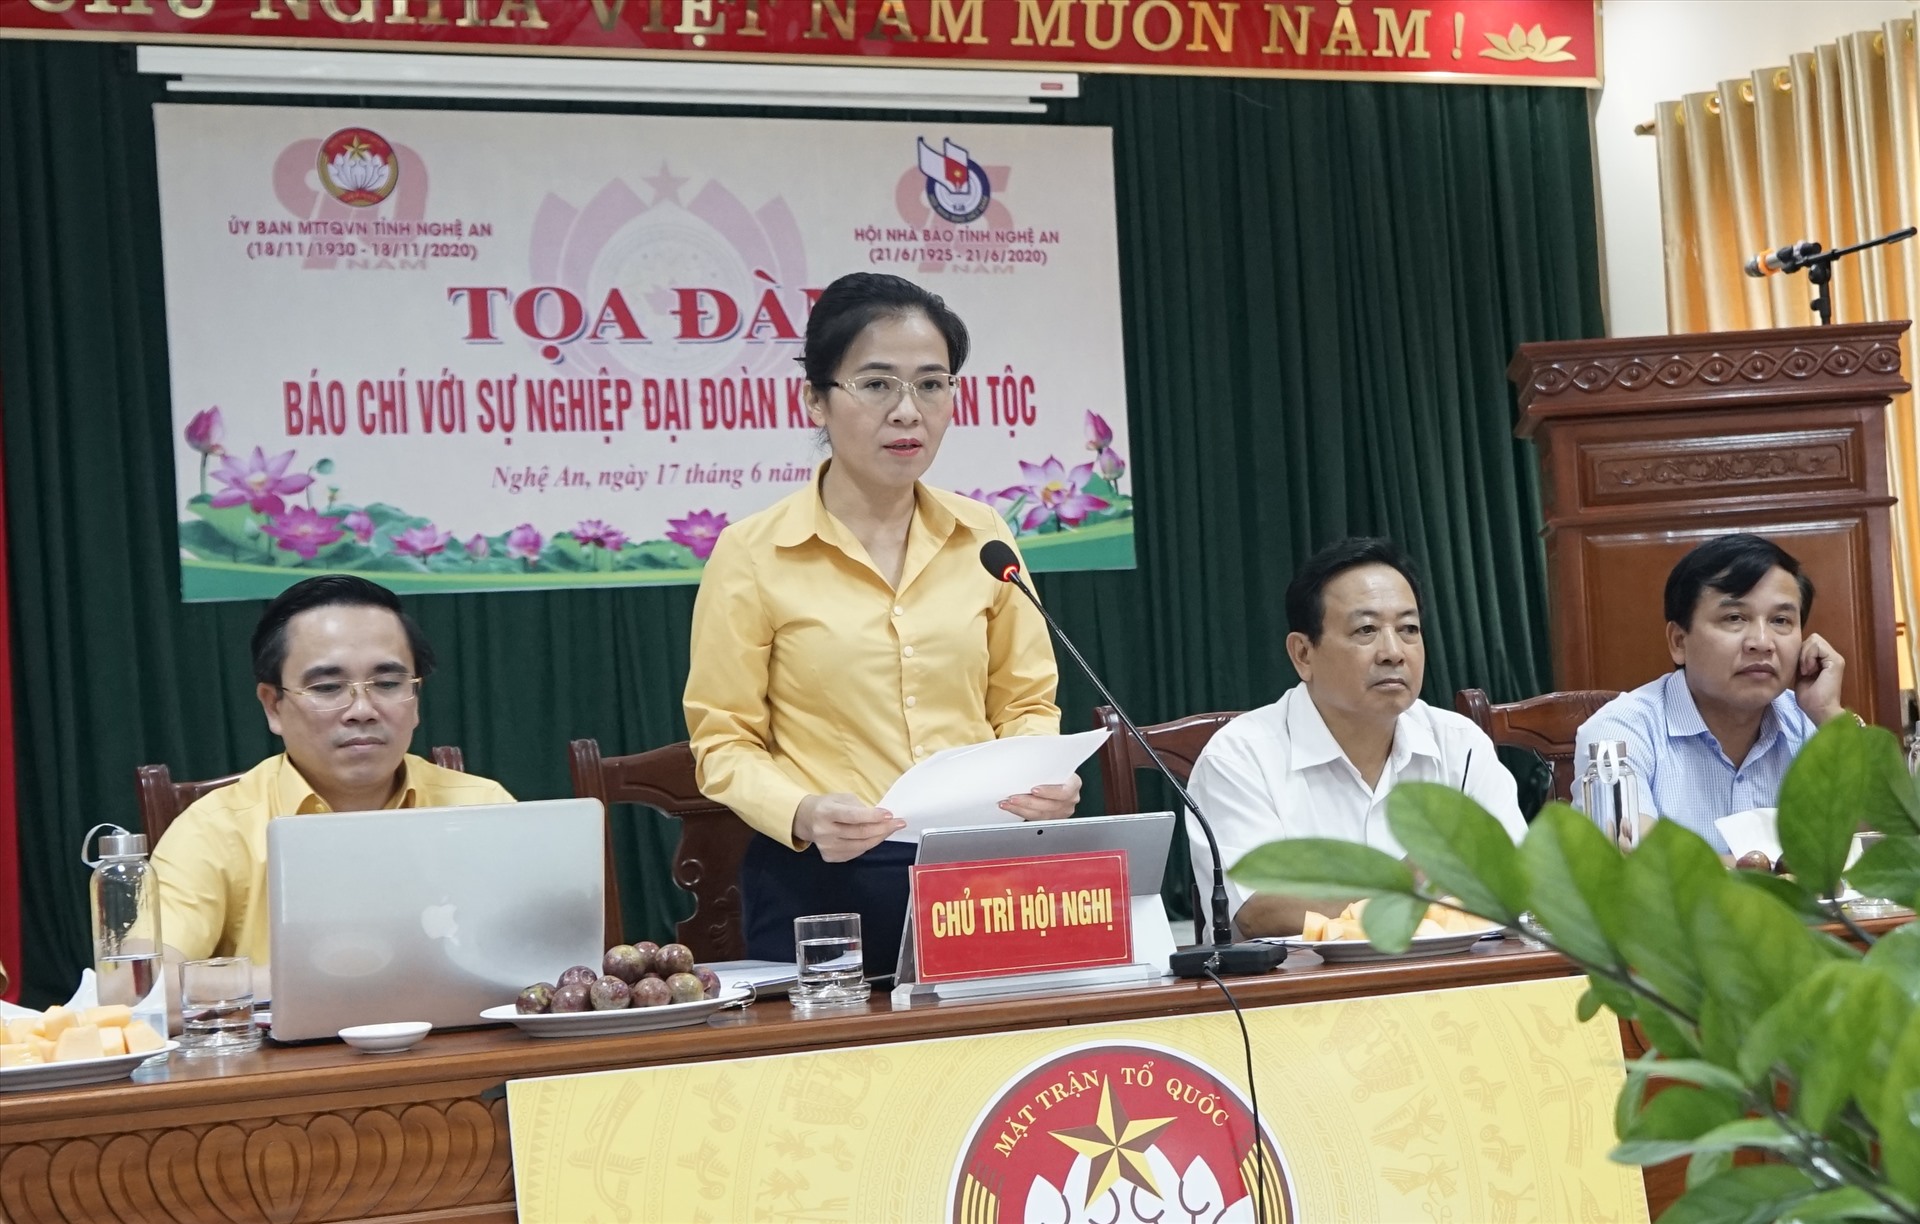 Bà Võ Thị Minh Sinh – Chủ tịch Ủy ban Mặt trận Tổ quốc tỉnh Nghệ An. Ảnh: Quang Đại